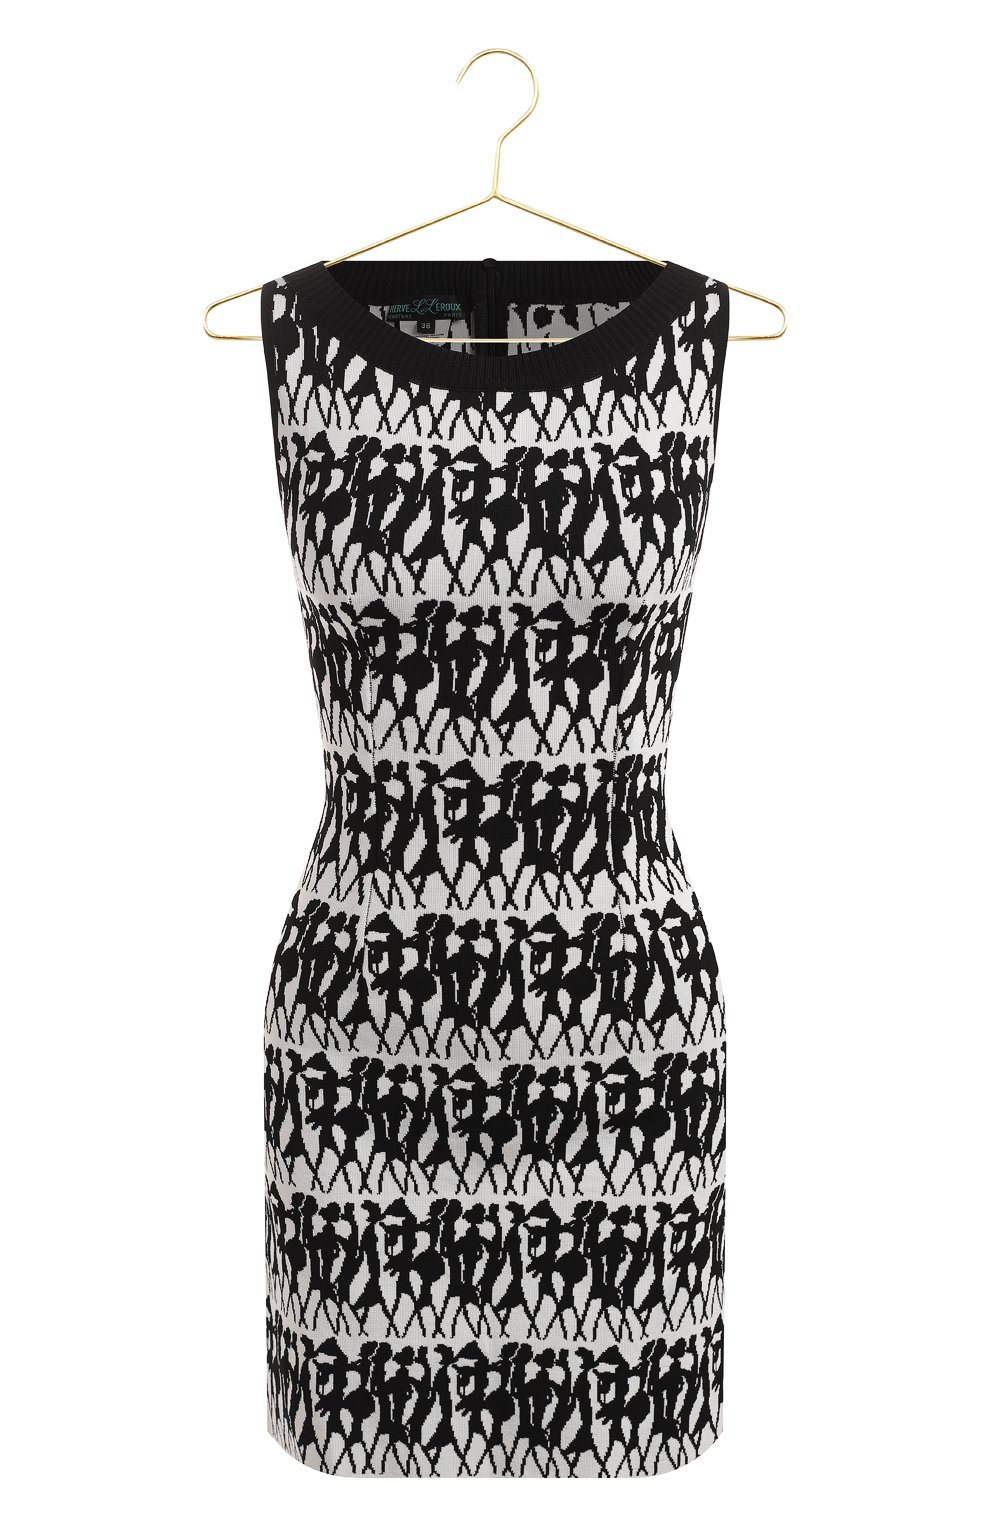 Платье из вискозы | Herve L.Leroux | Чёрно-белый - 1